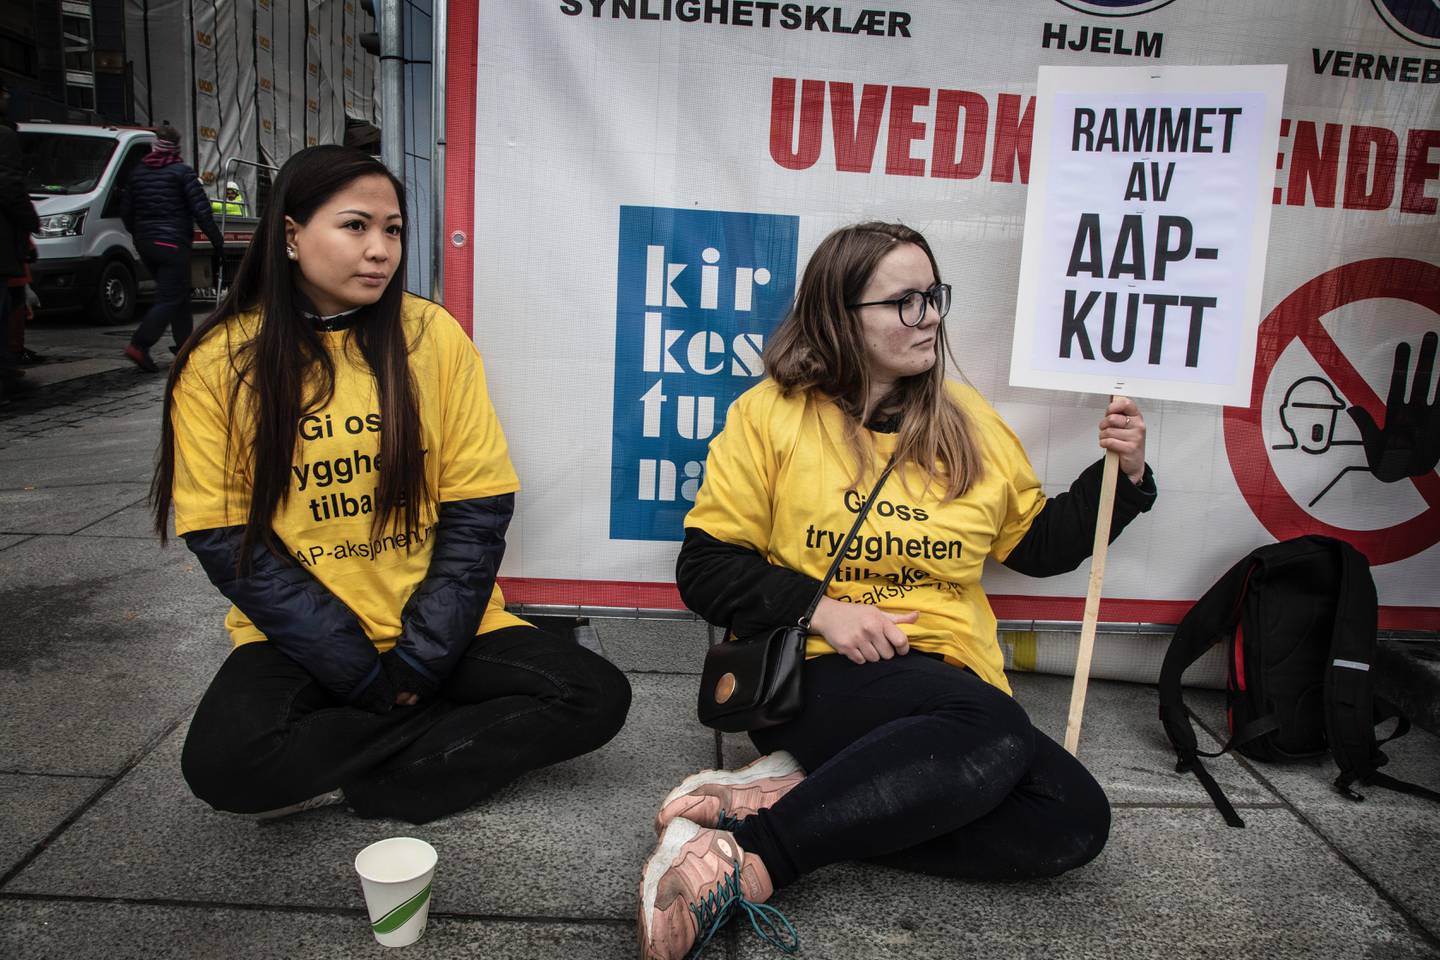 Ina Hansen (25) mener saken trenger mer oppmerksomhet. Kathrine Larssen (27) gikk tidligere selv på AAP. Under lørdagens demonstrasjon støtter begge to de som nå er rammet av kuttene.